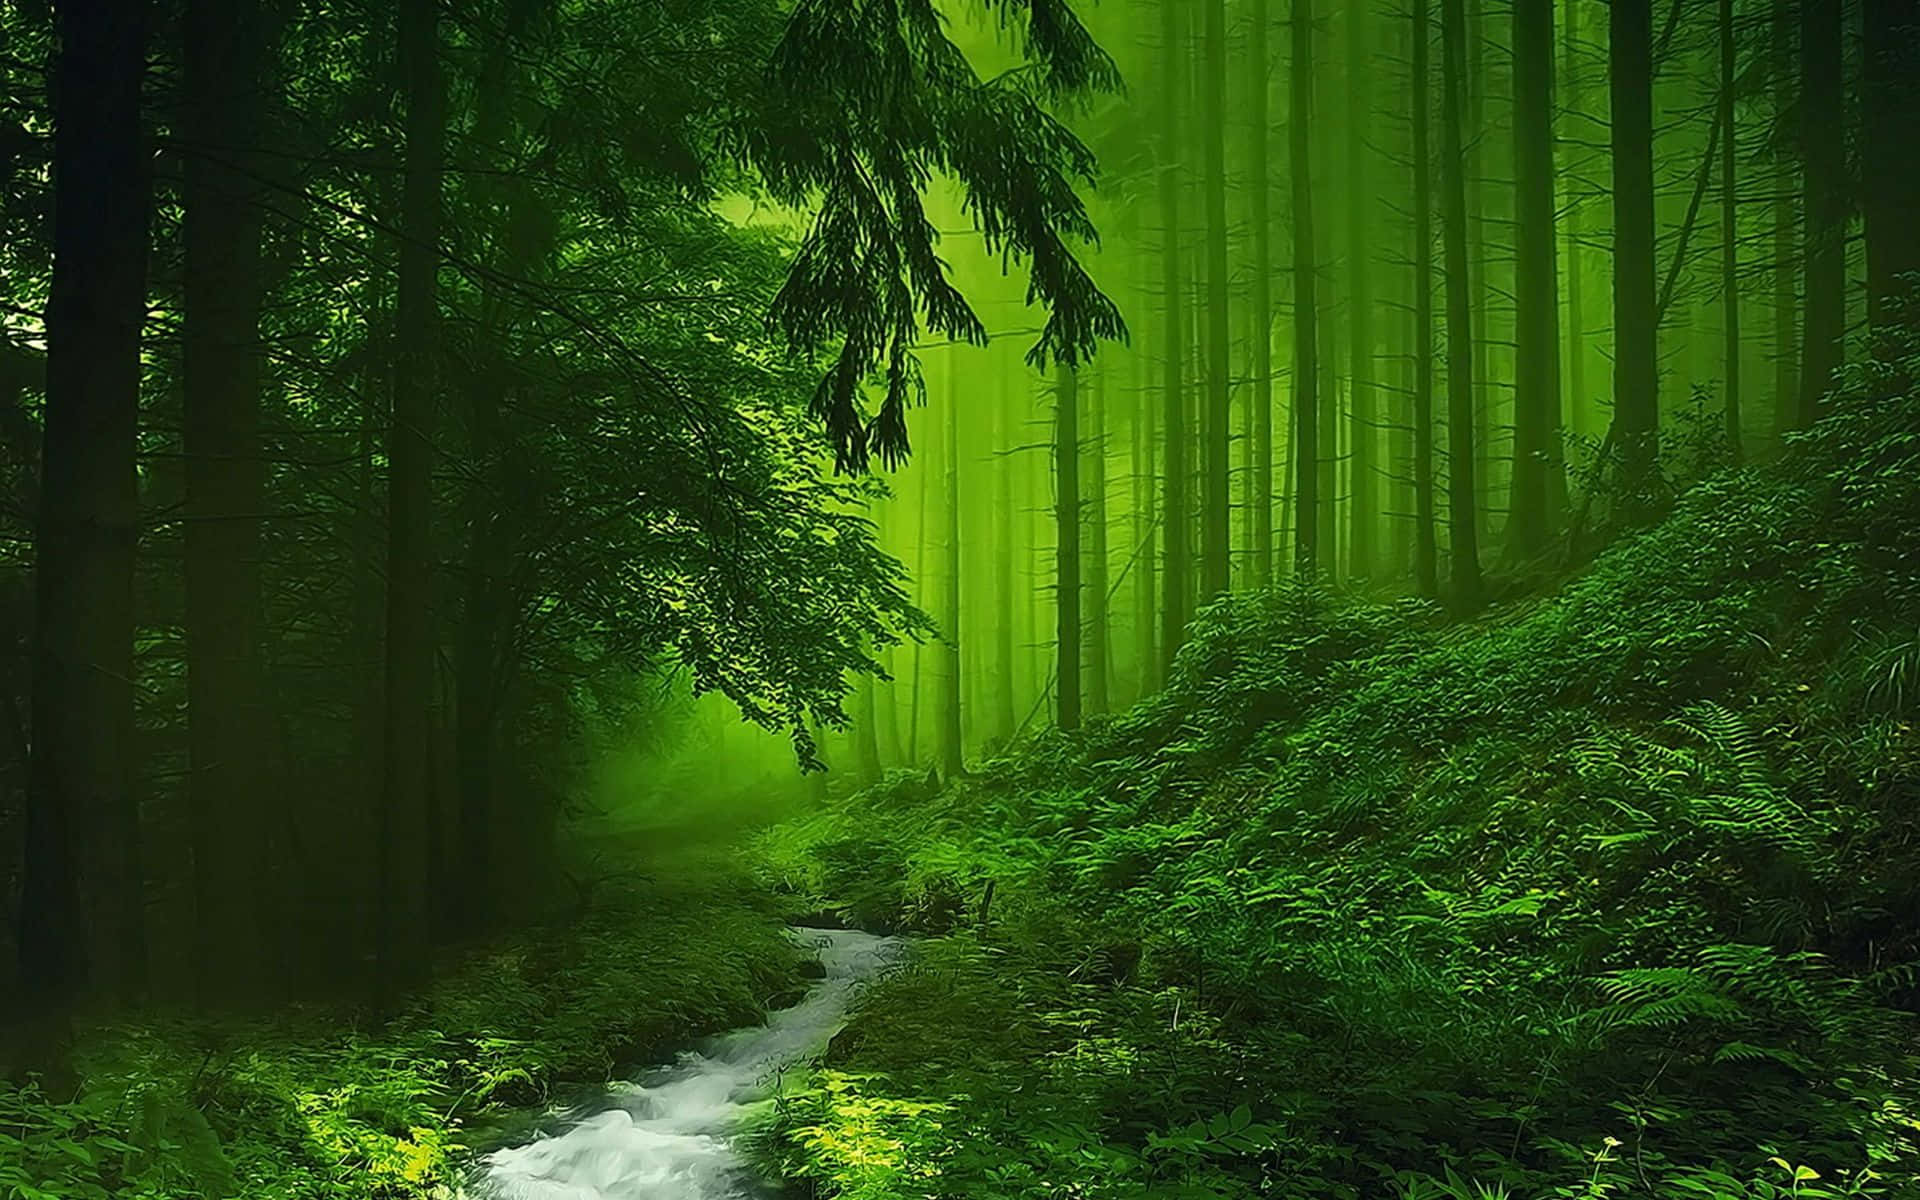 Lassensie Sich Von Der Schönheit Der Natur Umgeben Mit Einem Exquisiten Hintergrund In Grün.